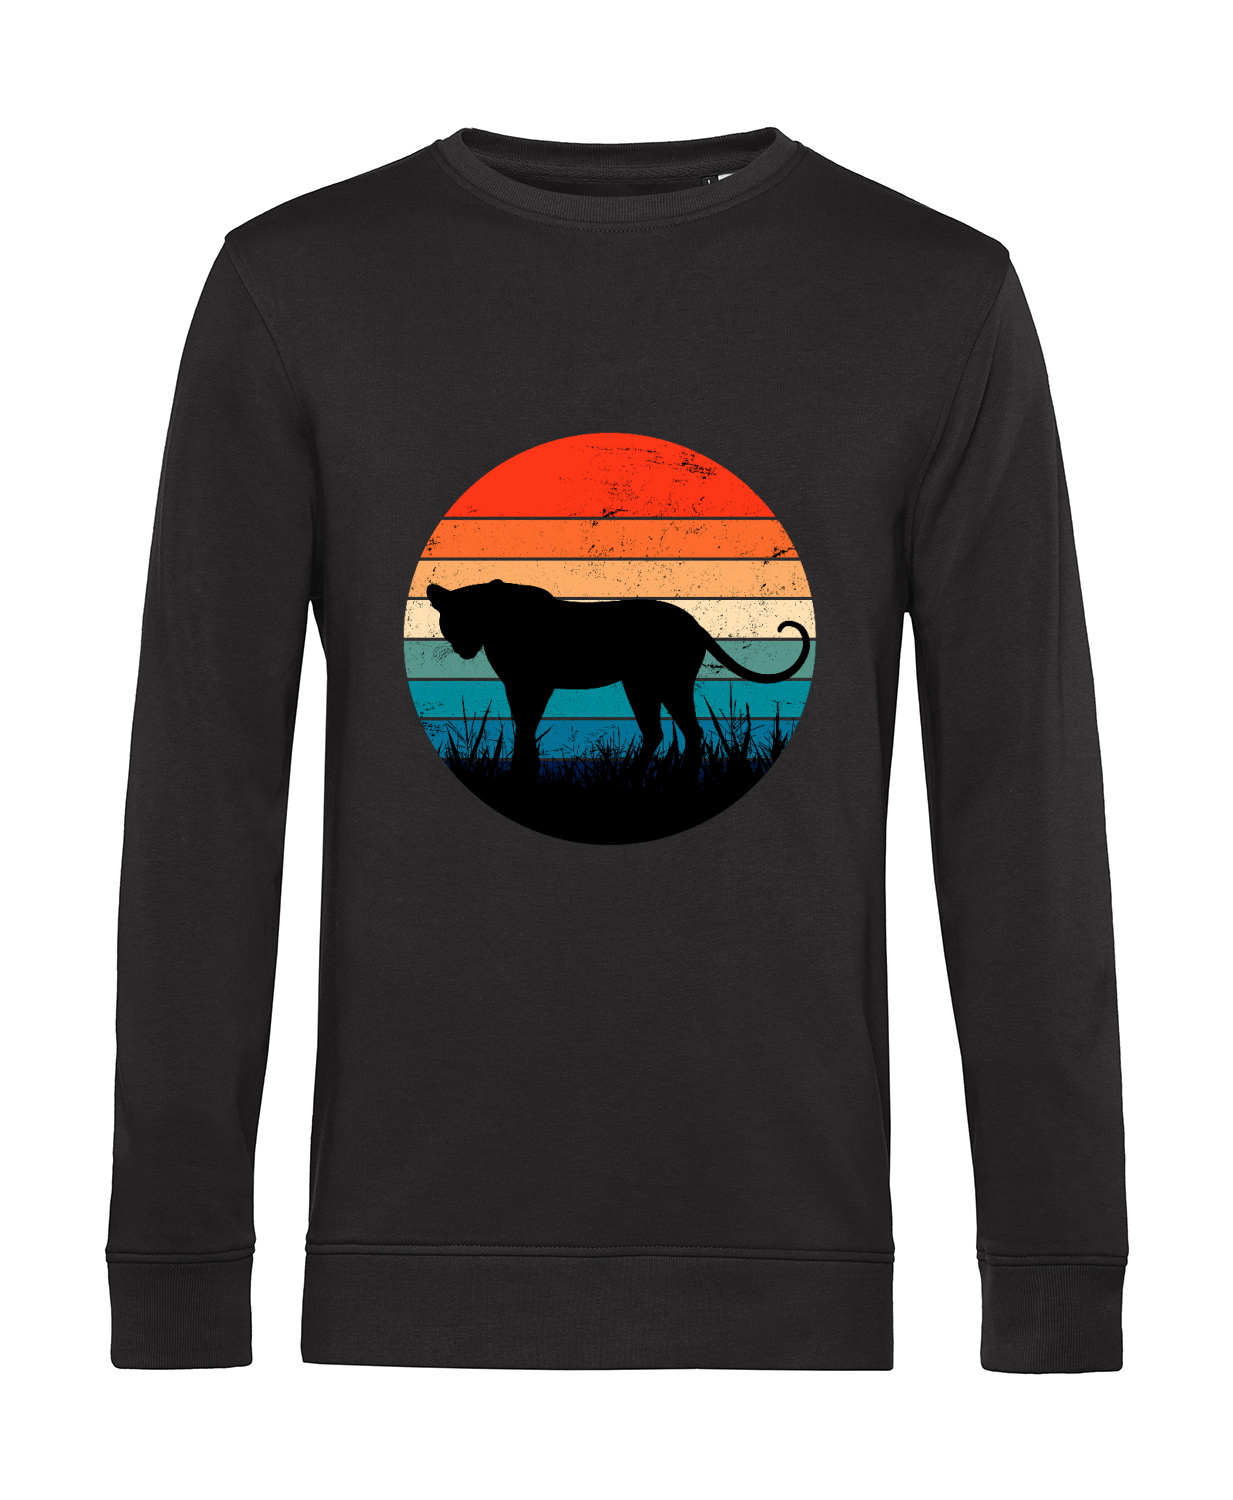 Nachhaltiges Sweatshirt Herren Leopard Retro